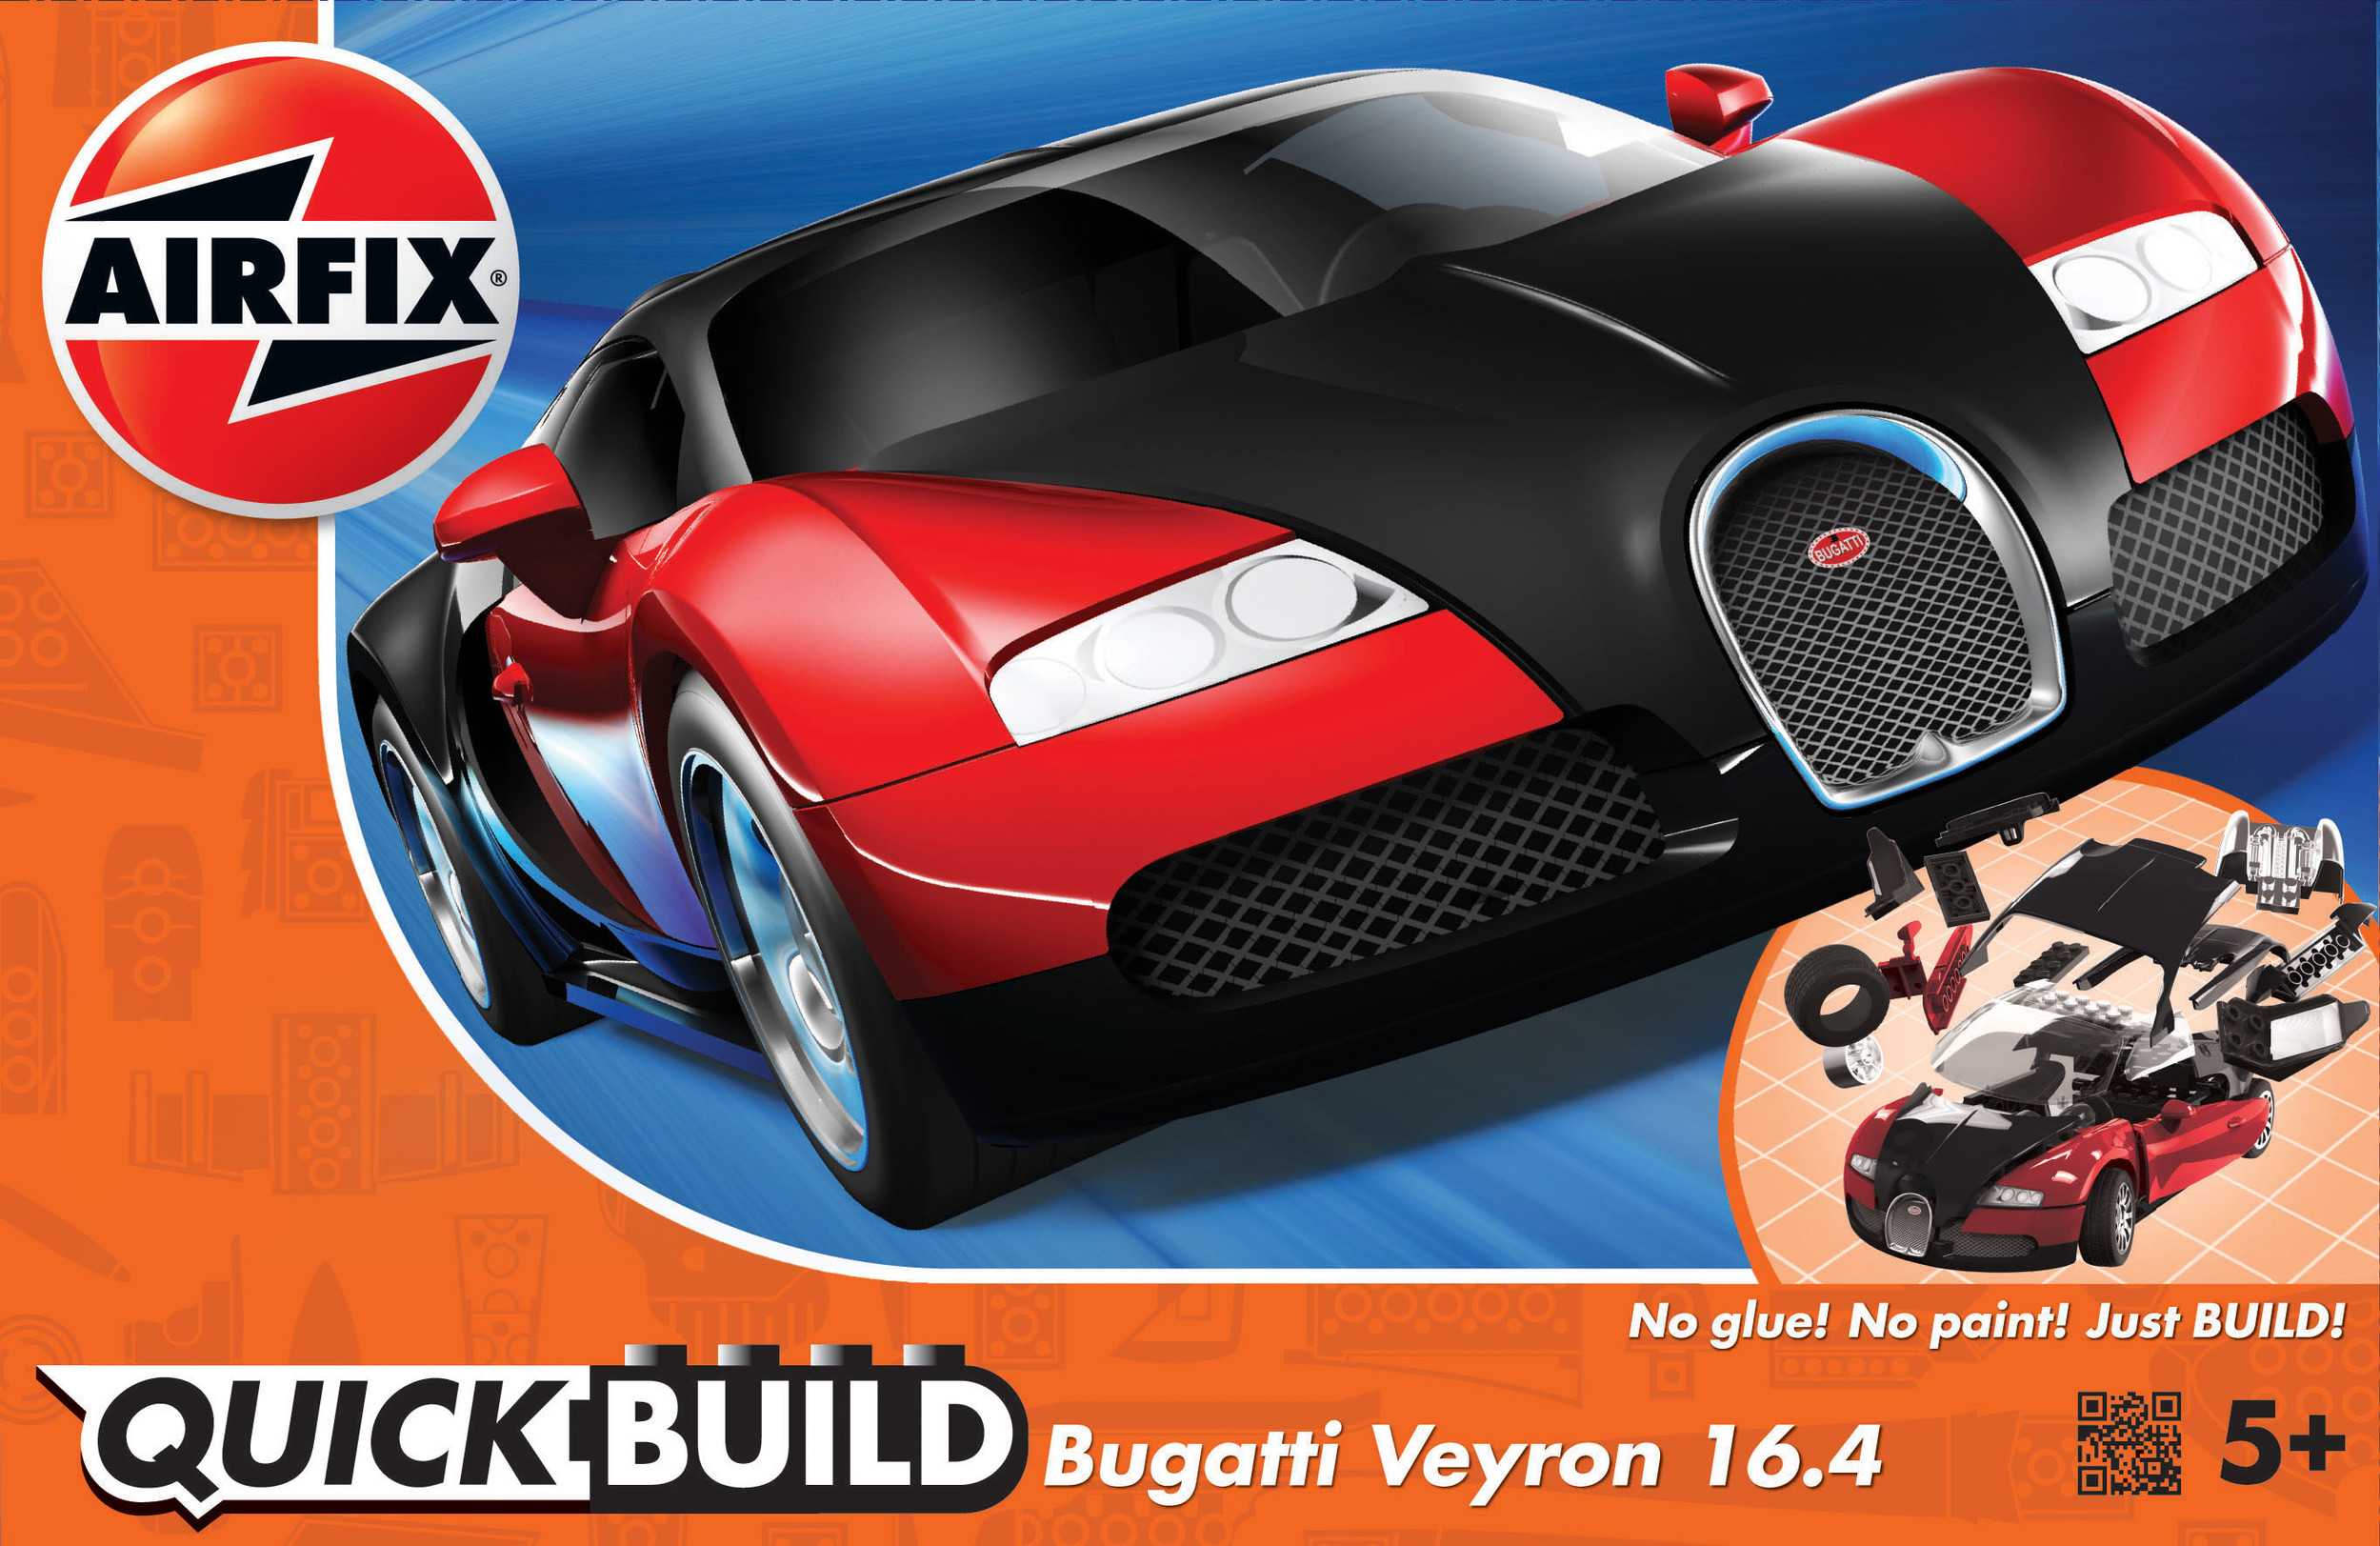 Maquette de voiture - QUICKBUILD Bugatti Veyron - Noir & Rouge--Airfix